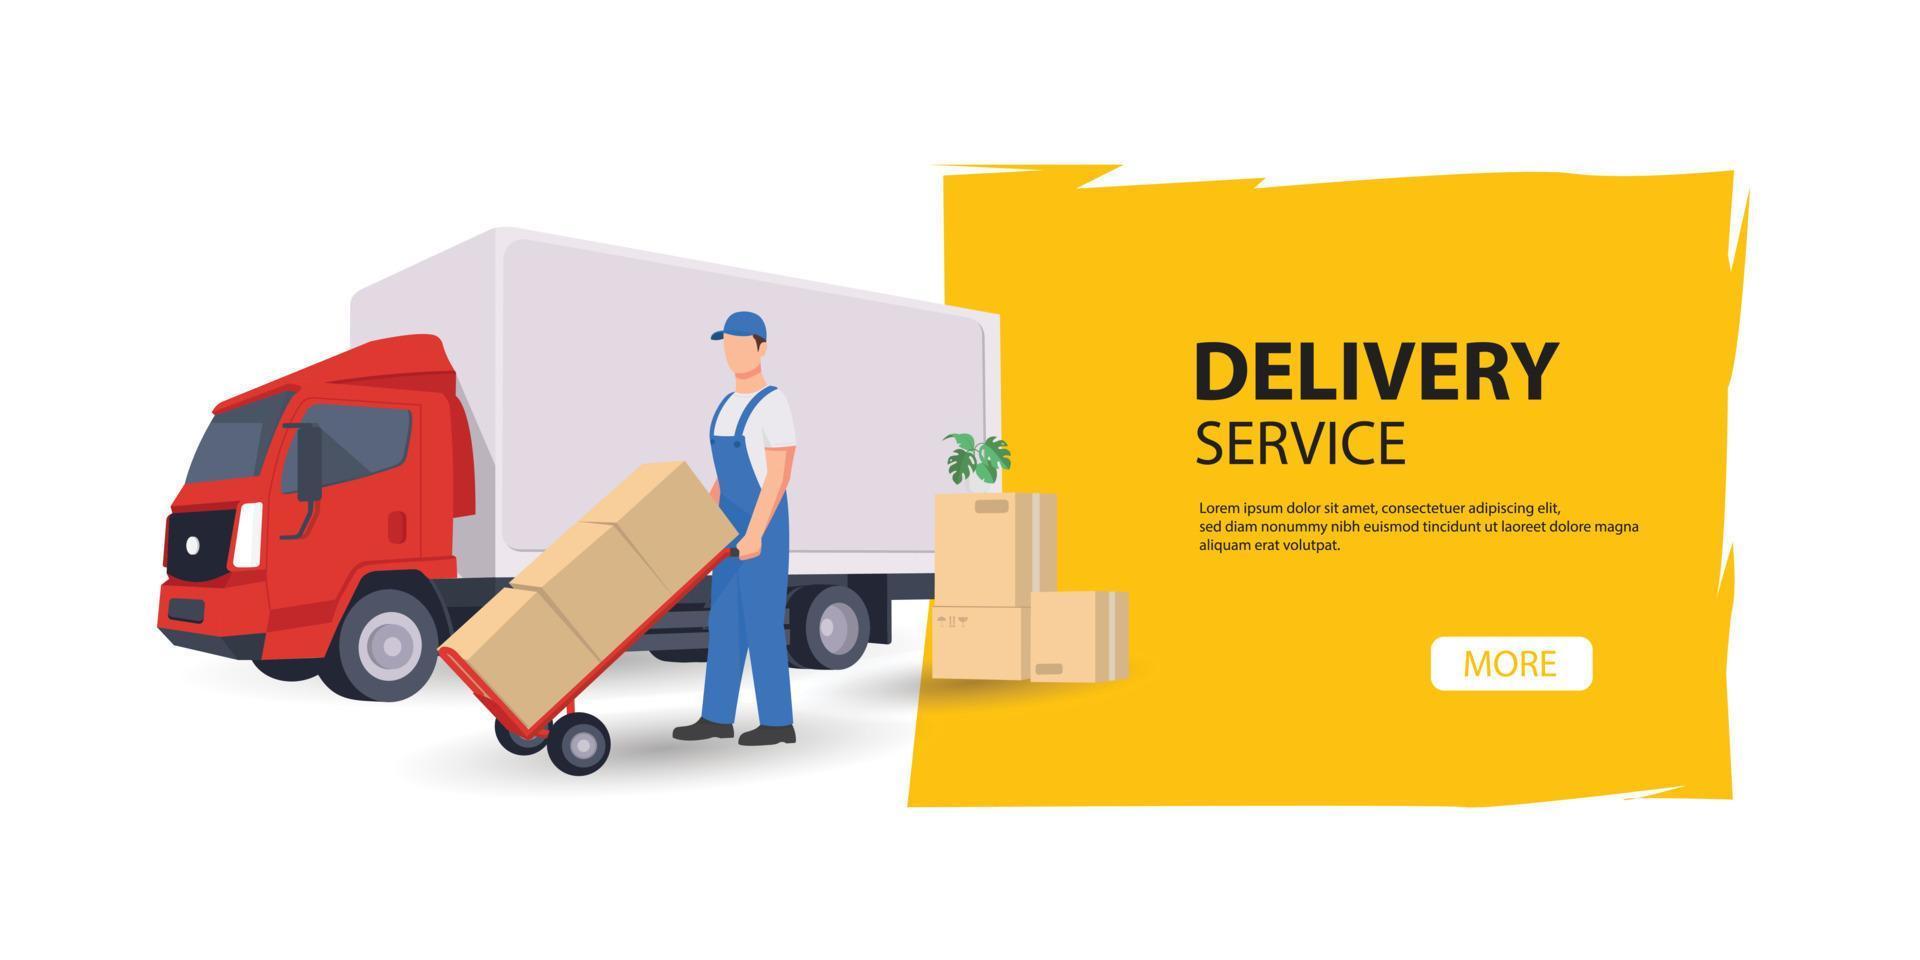 servicio de entrega en línea, seguimiento de pedidos en línea, logística, caja, camión y entrega, en vector móvil. ilustración